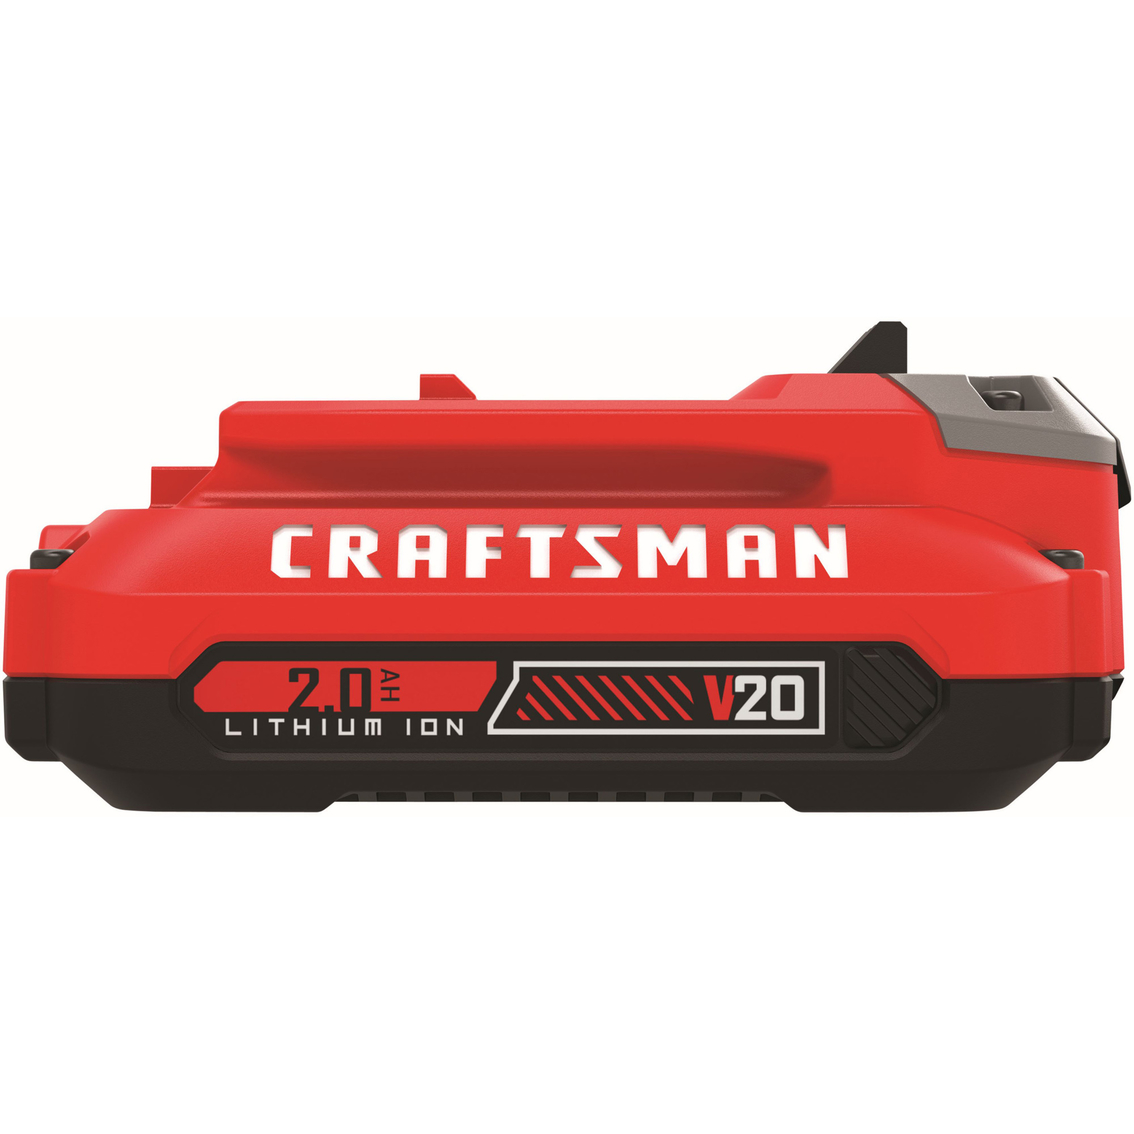 Craftsman 20V 2.0 Amp Hour Li-ion Battery - Image 4 of 4